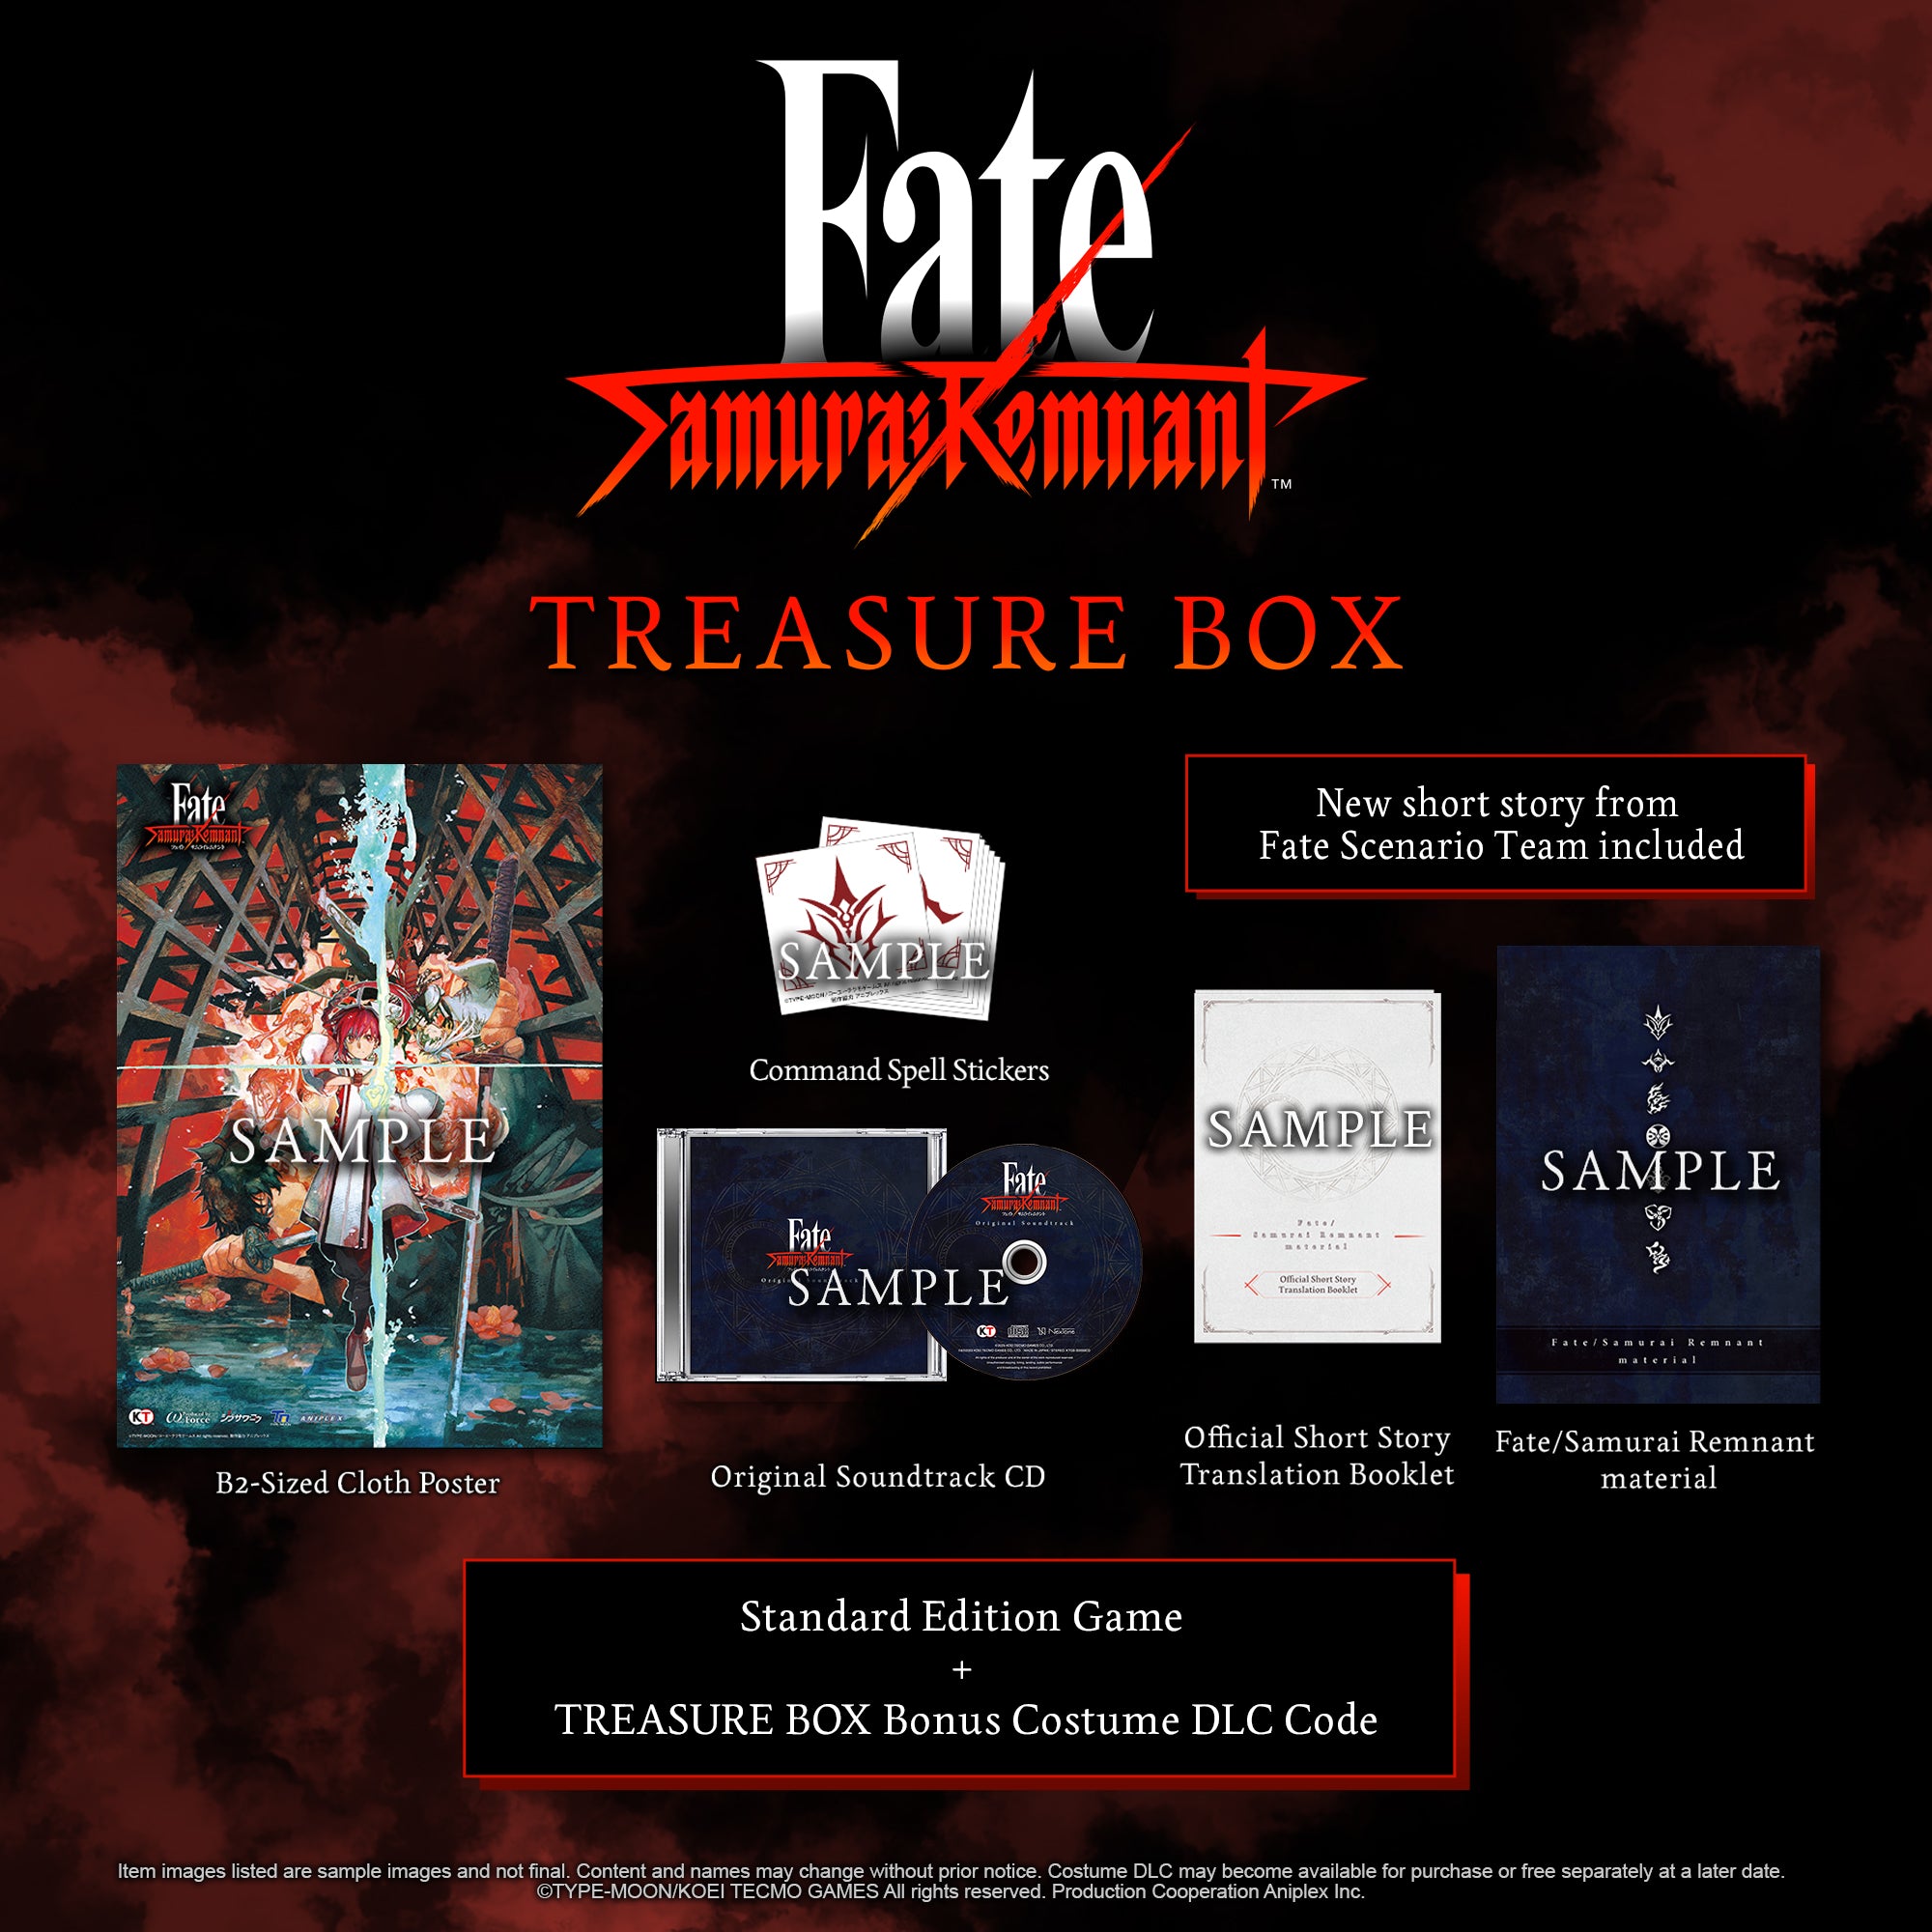 PS4 Fate/Samurai Remnant TREASURE BOX-